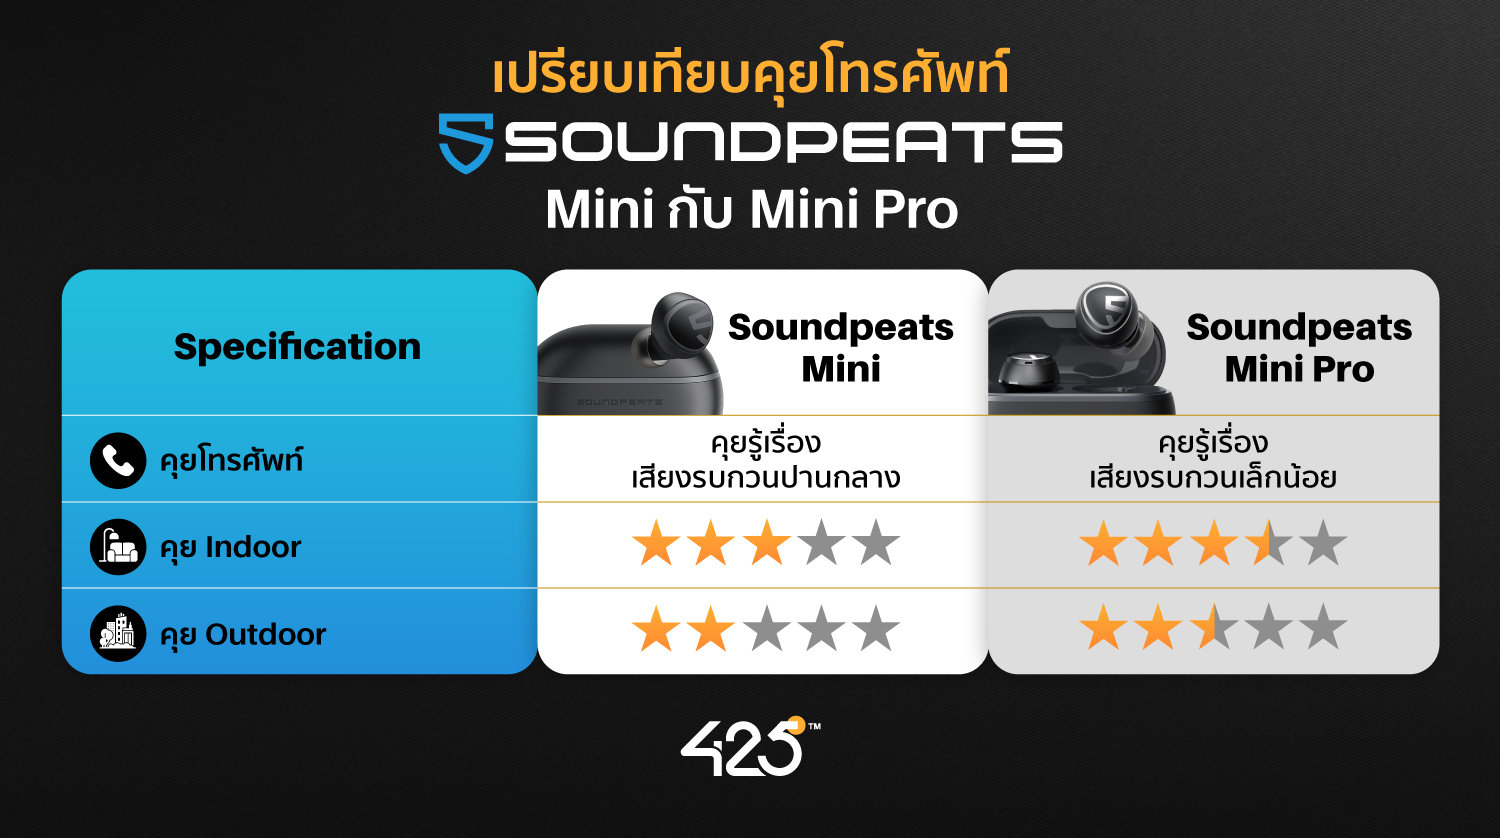 หูฟังไร้สาย,True Wireless,soundpeats mini,soundpeats mini pro,หูฟังบลูทูธ,soundpeats ดีไหม,รุ่นไหนดี,เปรียบเทียบหูฟัง